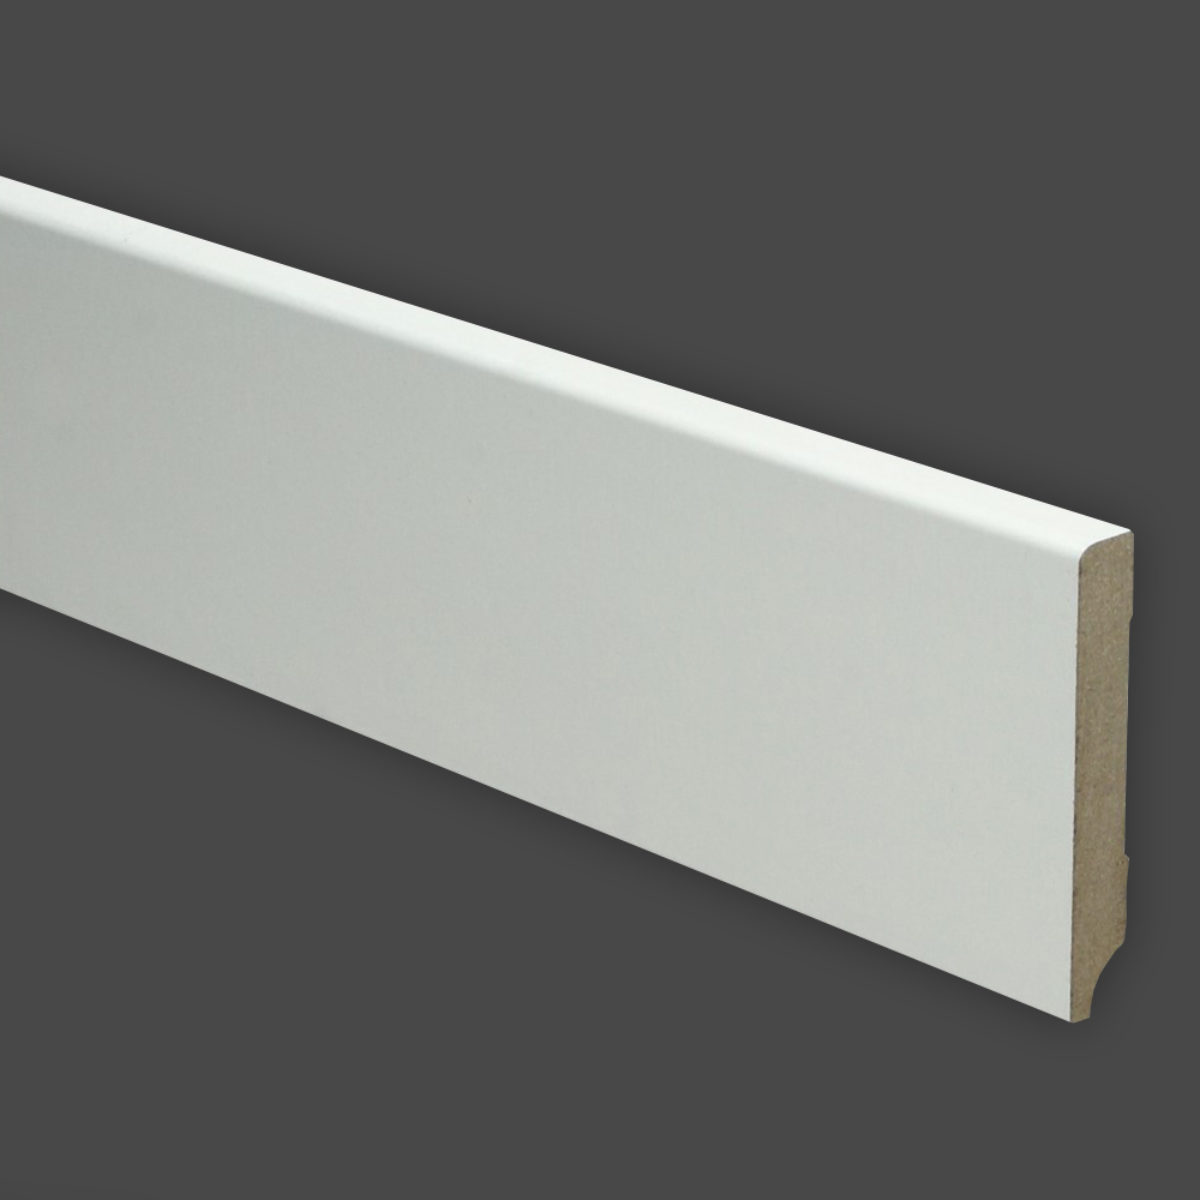 MDF Moderne plint 58x12 wit afgelakt RAL 9003 - Het Vloerenhuis